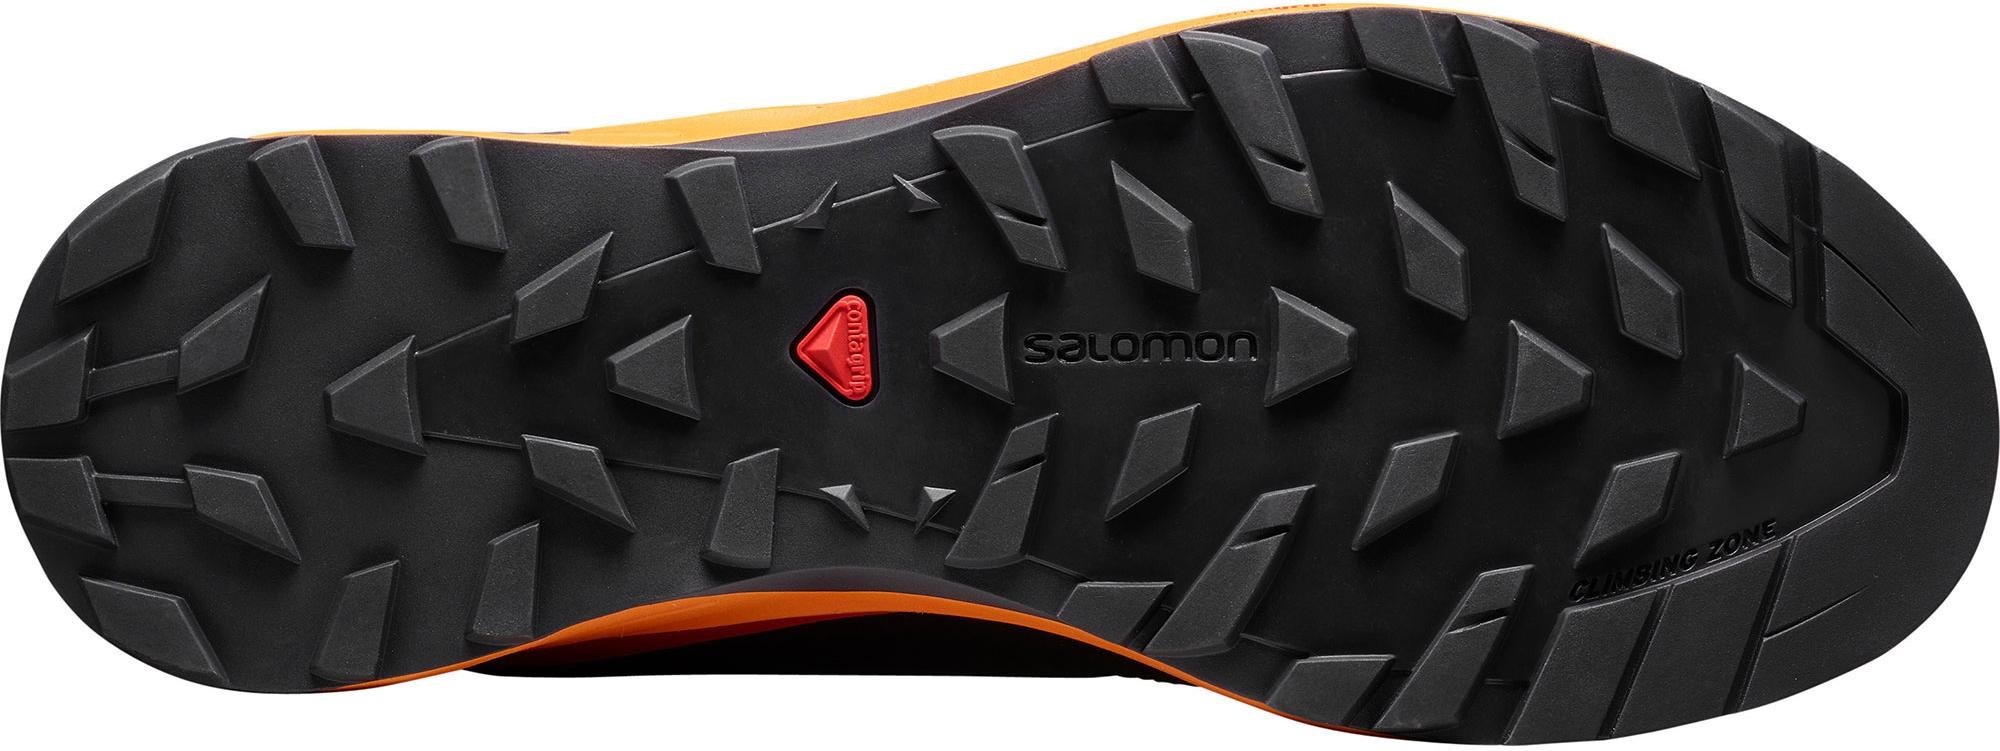 Trail shoes Salomon X ALPINE PRO